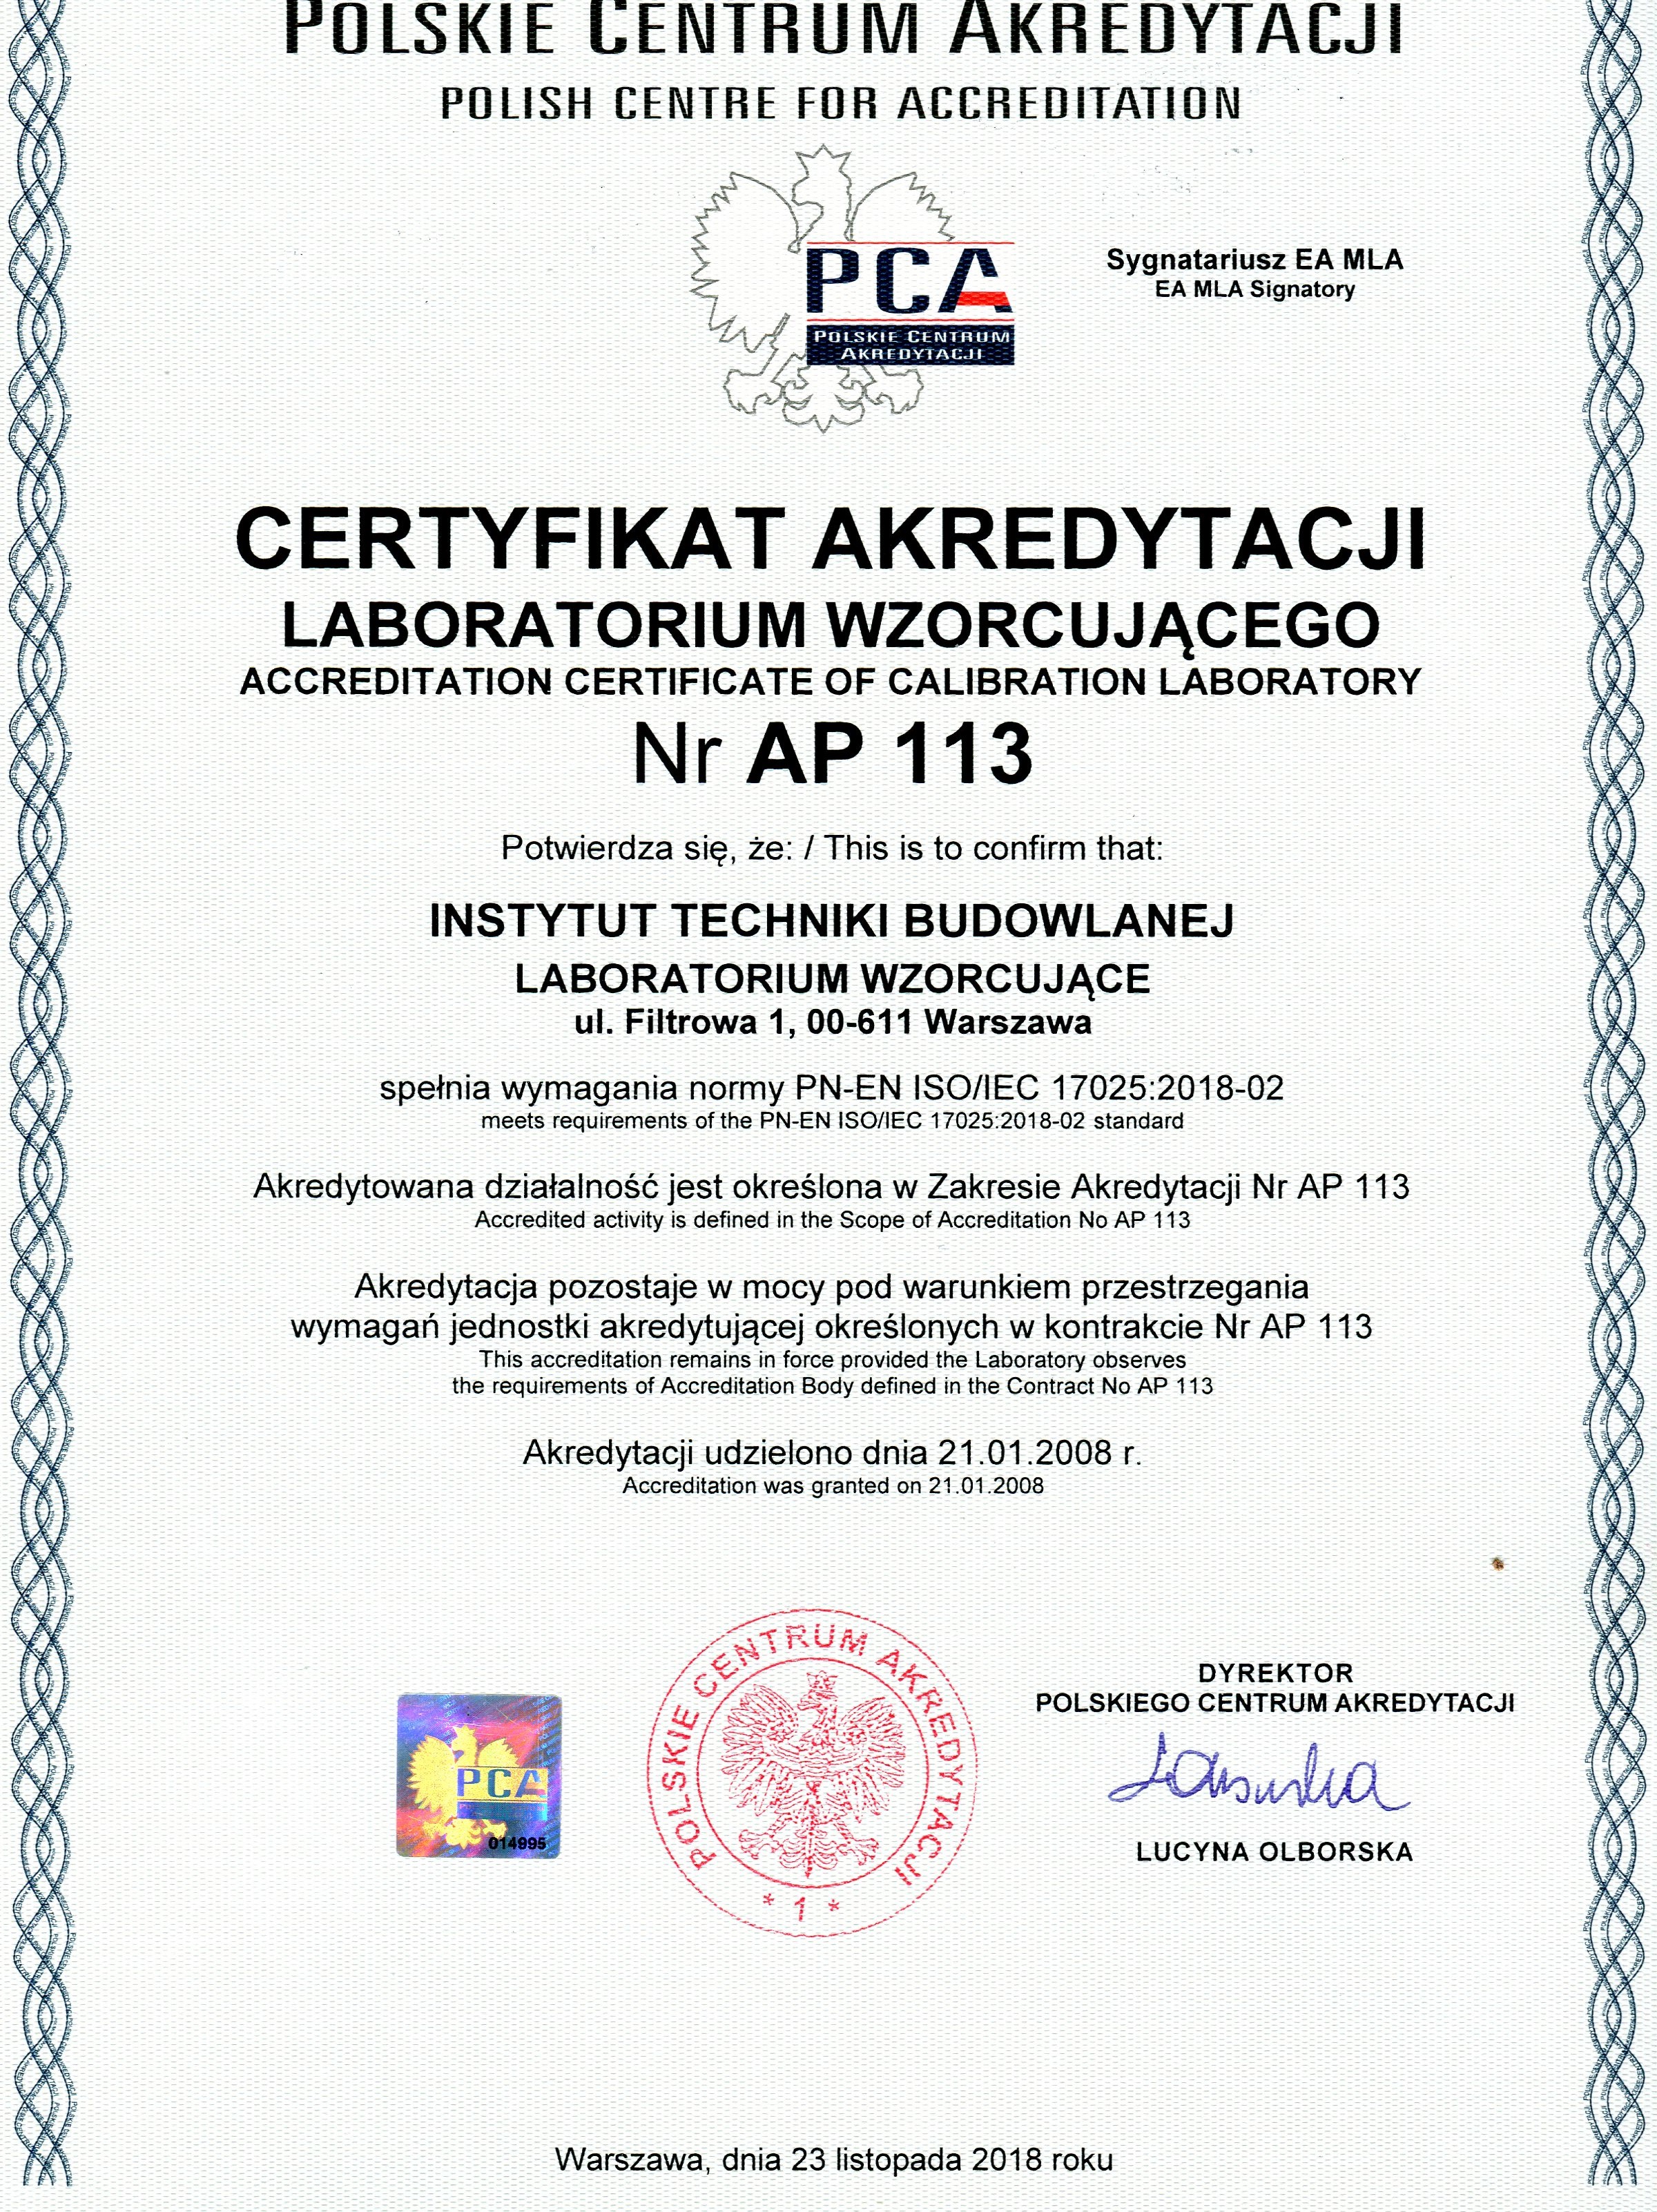 Certyfikat Akredytacji Laboratorium Wzorcującego Nr AP 113 potwierdzający spełnienie przez ITB Laboratorium Wzorcujące wymagań normy PN-EN ISO/EC 17025-2018-02. Akredytowana działalność określona jest w Zakresie Akredytacji Nr AP 113